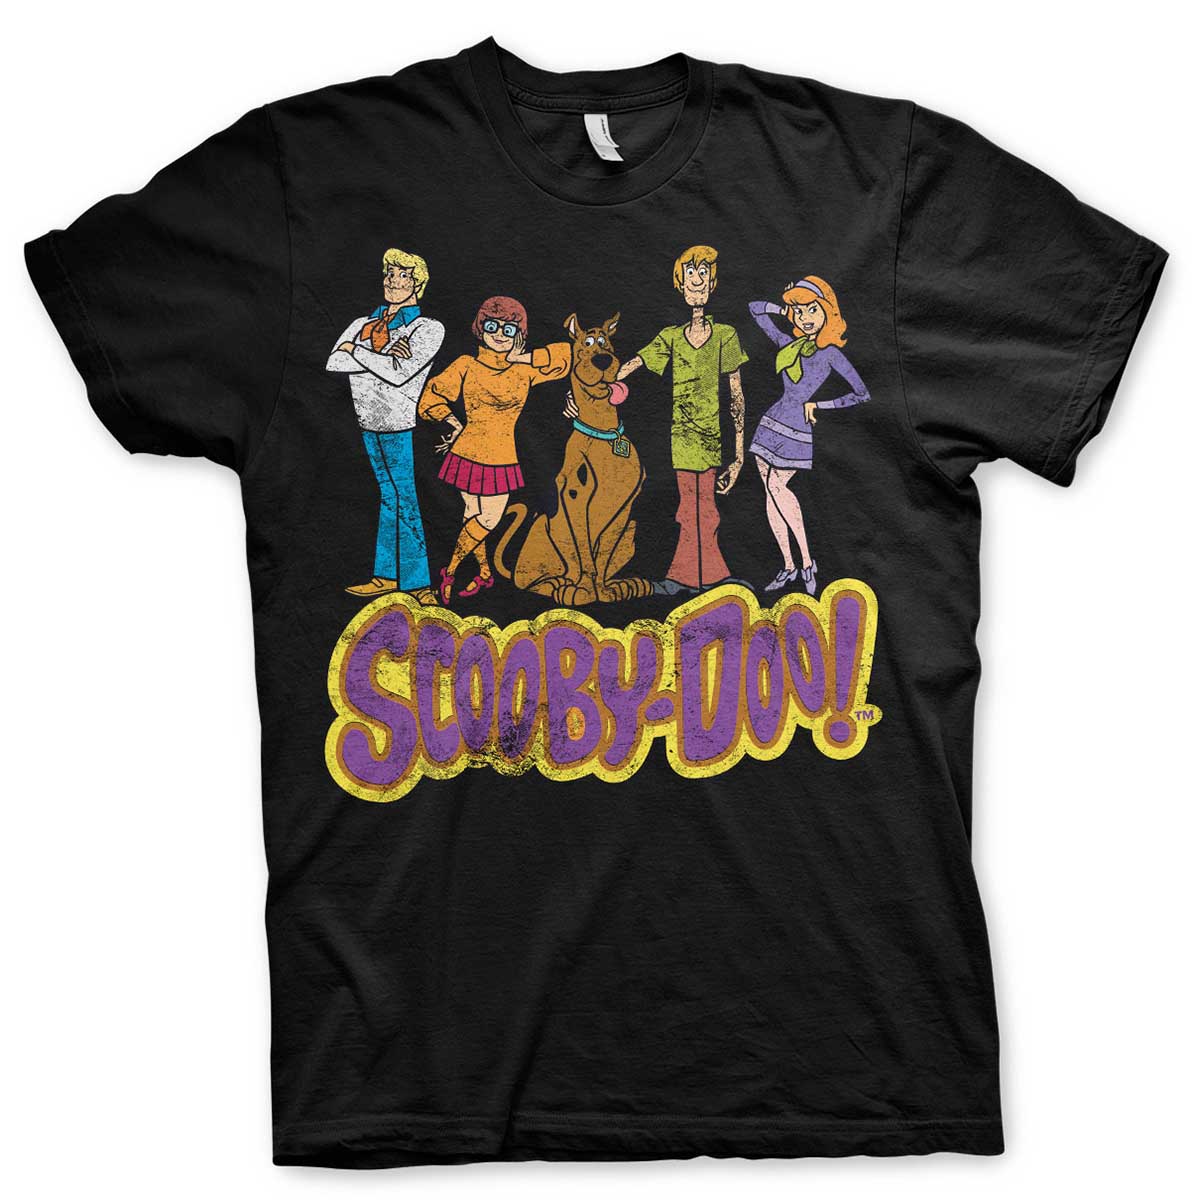 T-shirt team Scooby-Doo XL